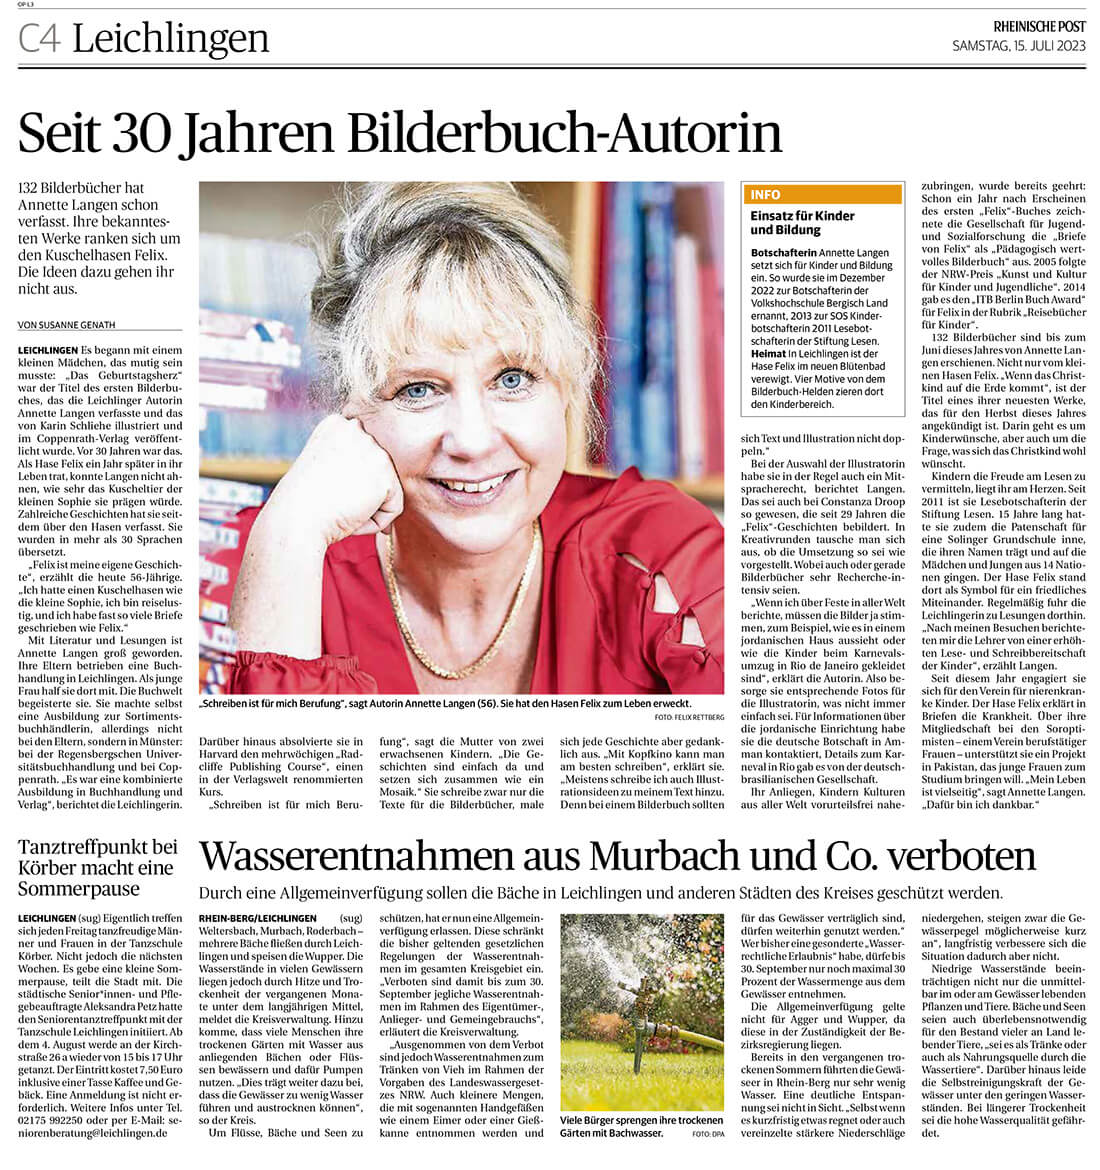 Annette Langen in der Rheinischen Post